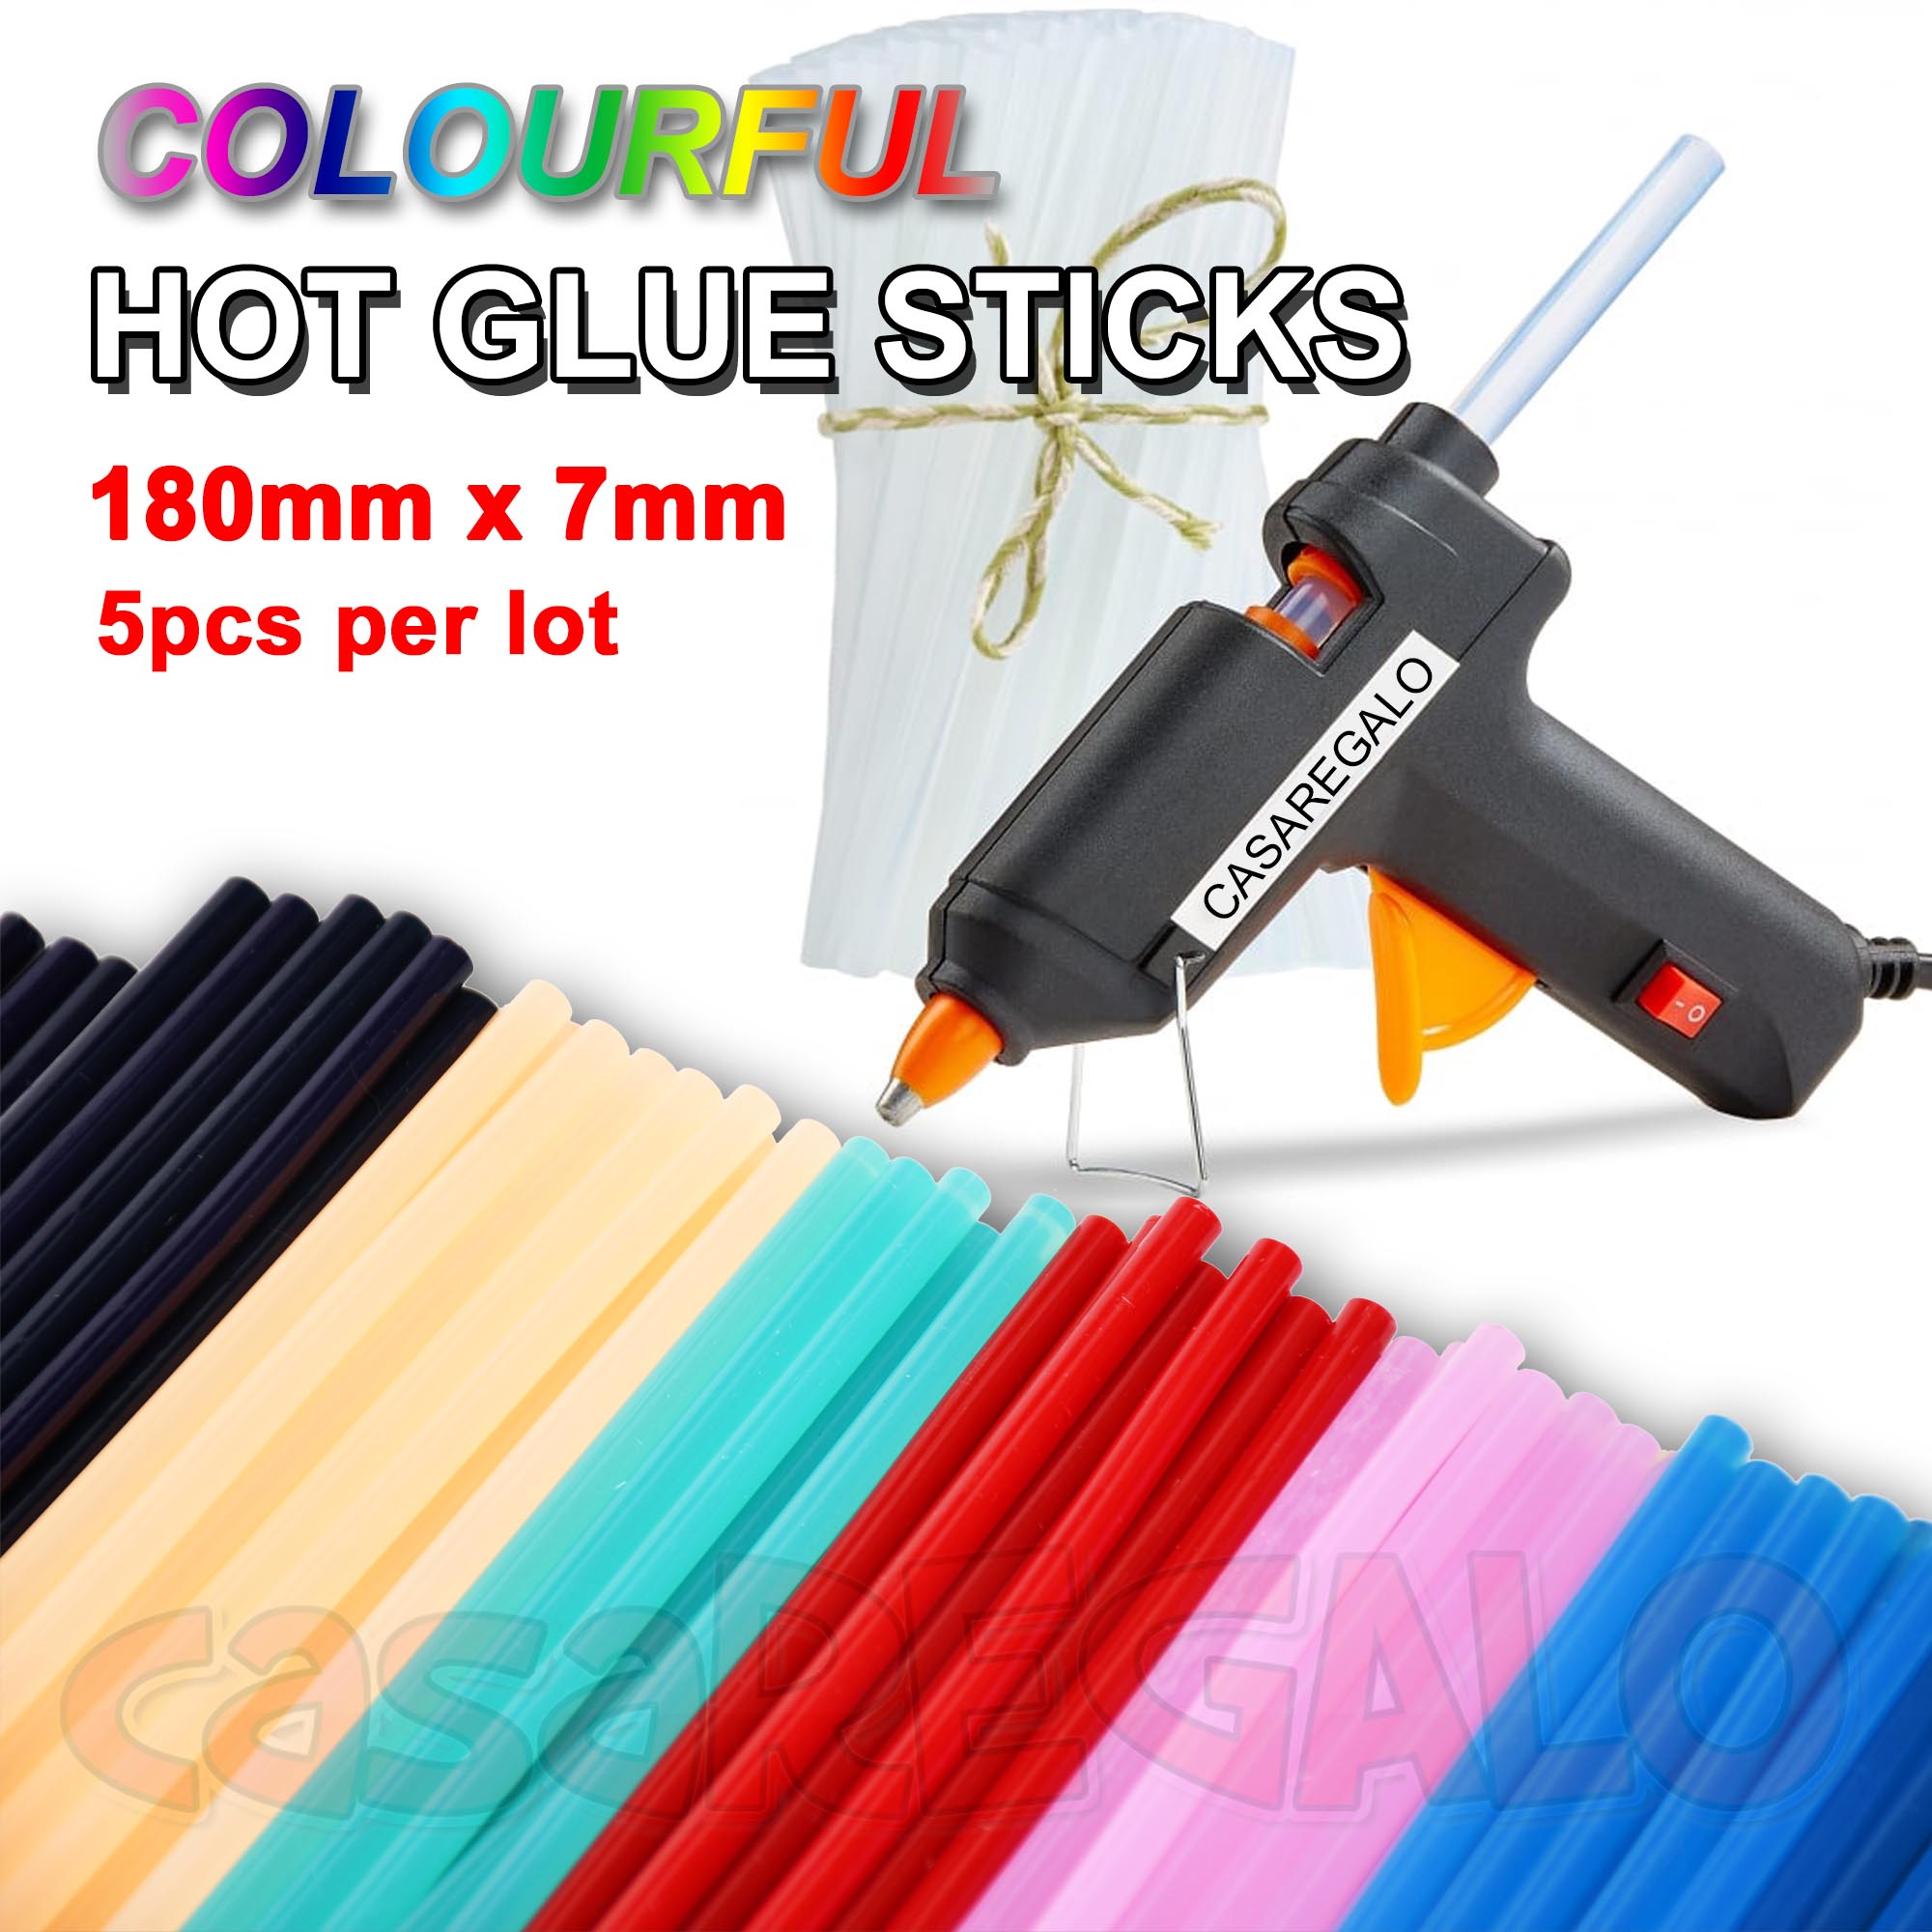 cheap hot glue sticks in bulk